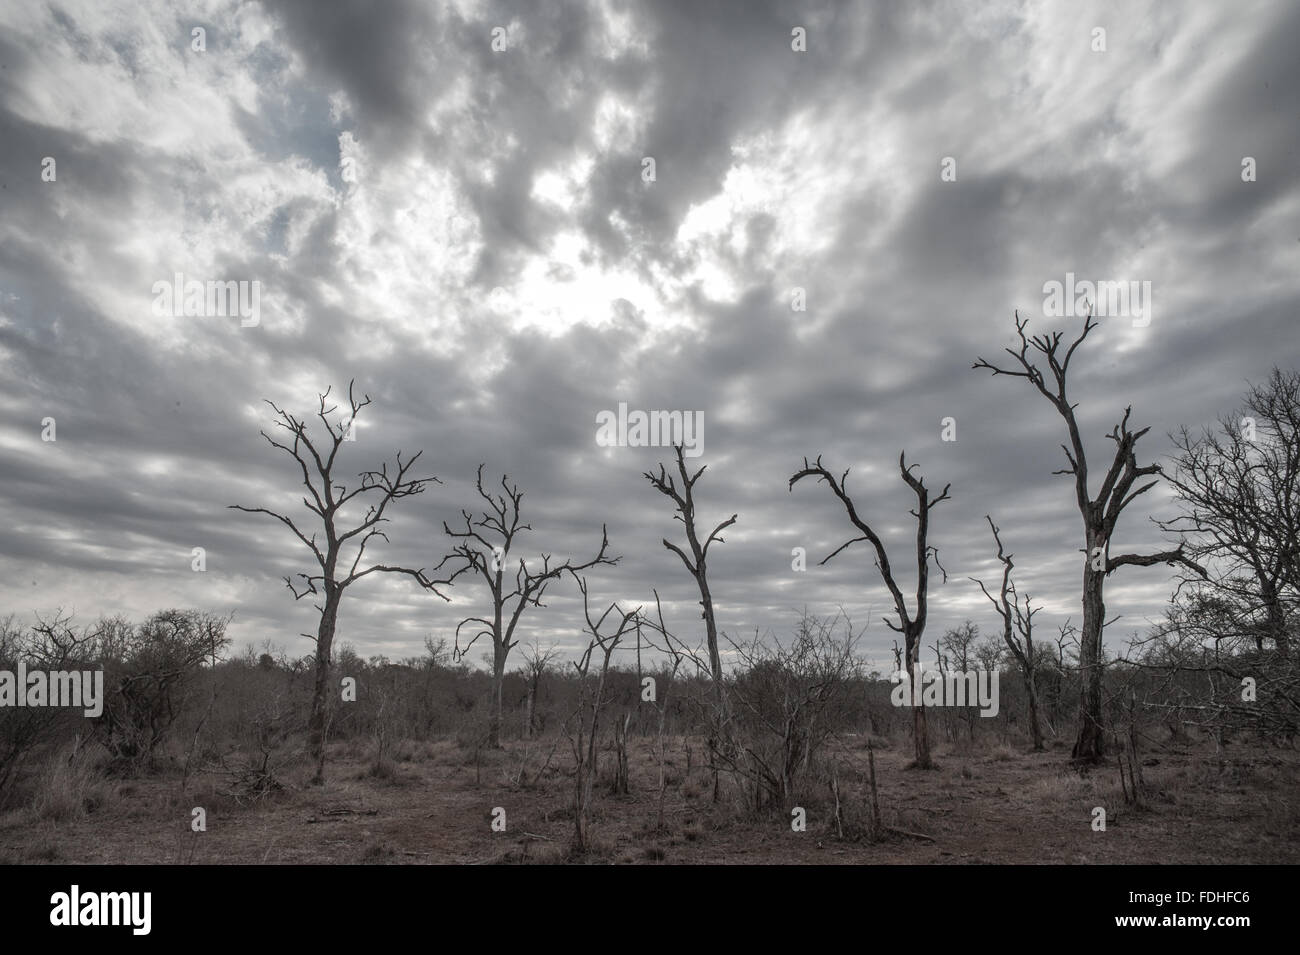 Los árboles muertos en el parque de Hlane, Suazilandia, África. Foto de stock